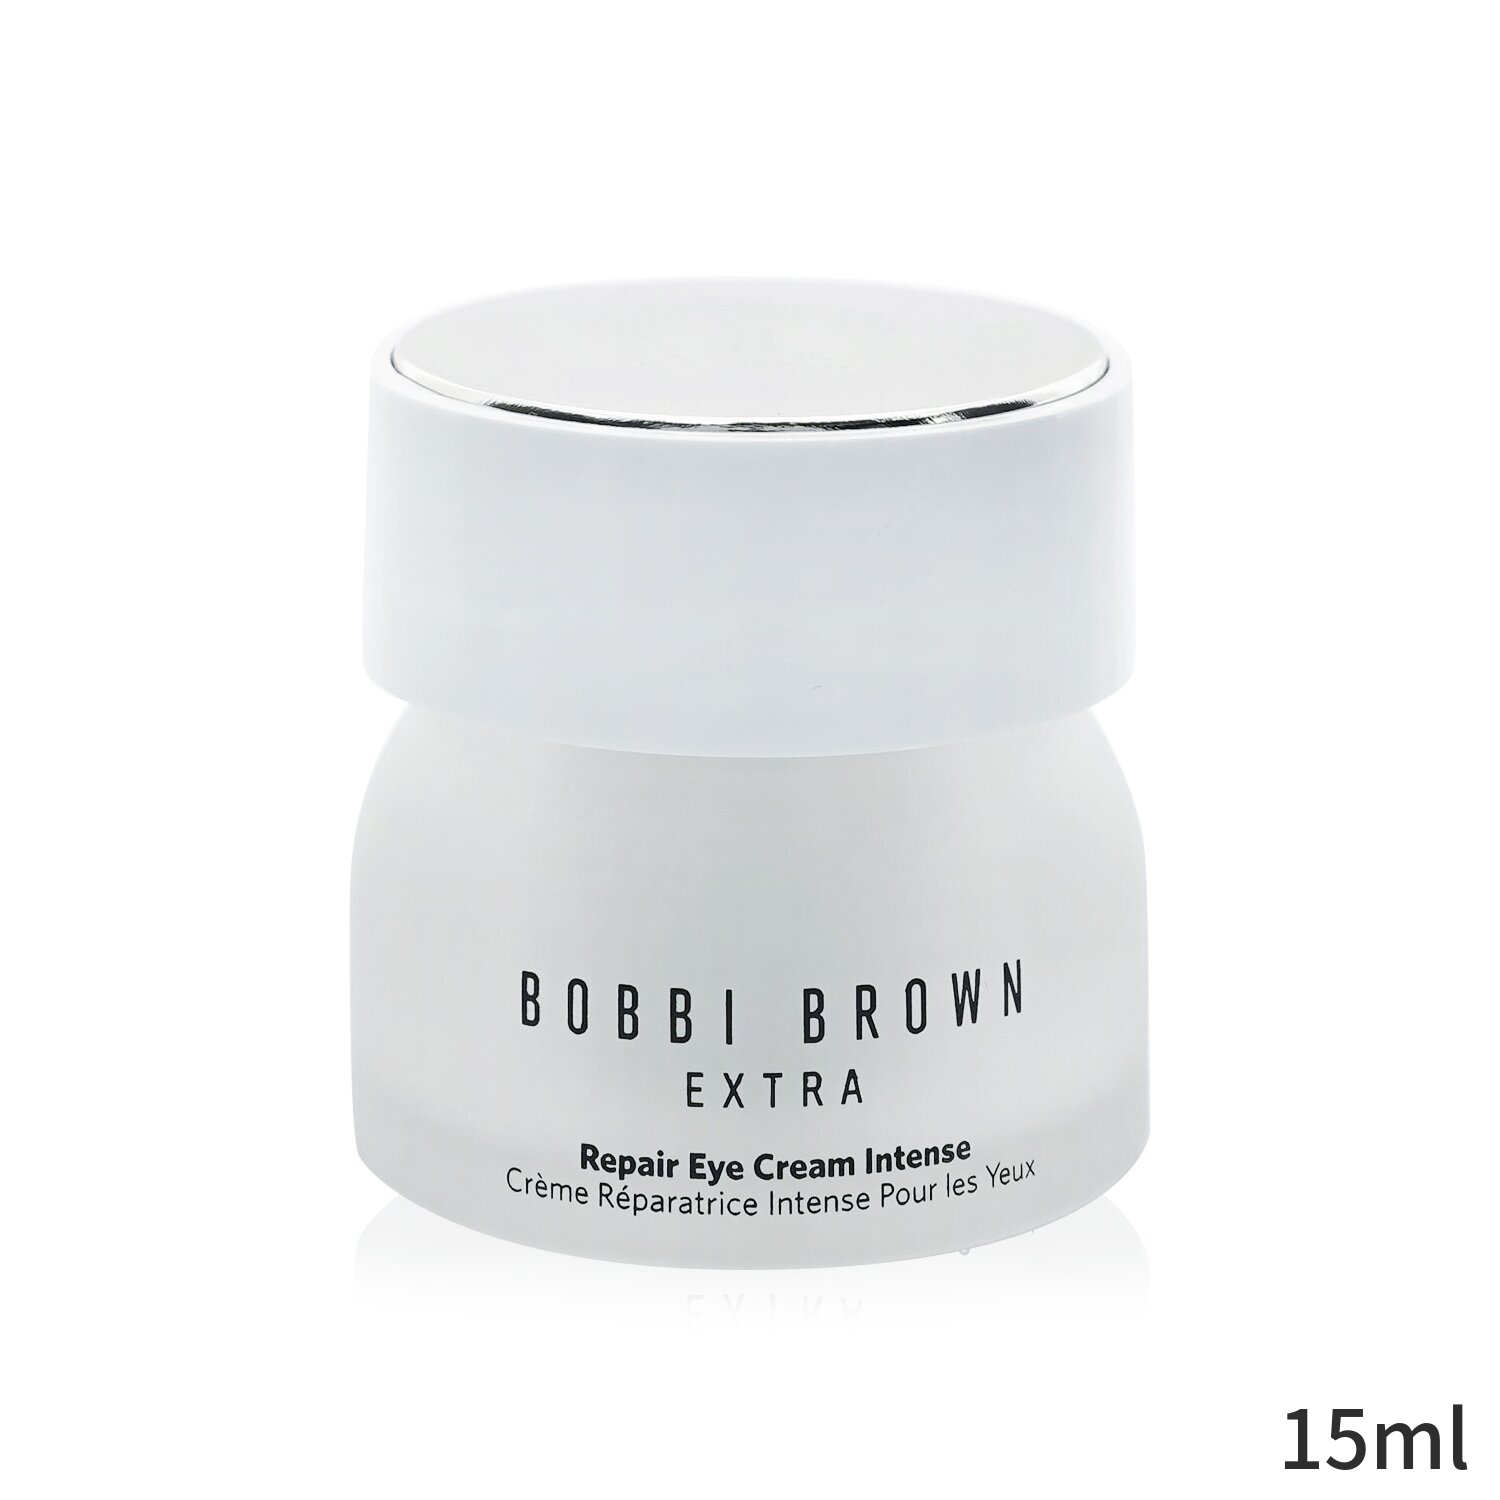 特価ブランド うのにもお得な ボビイブラウン アイケア Bobbi Brown Extra Repair Eye Cream Intense 15ml レディース スキンケア 女性用 基礎化粧品 アイ リップ 誕生日プレゼント ギフト 人気 ブランド コスメ wtzjp2.pl wtzjp2.pl